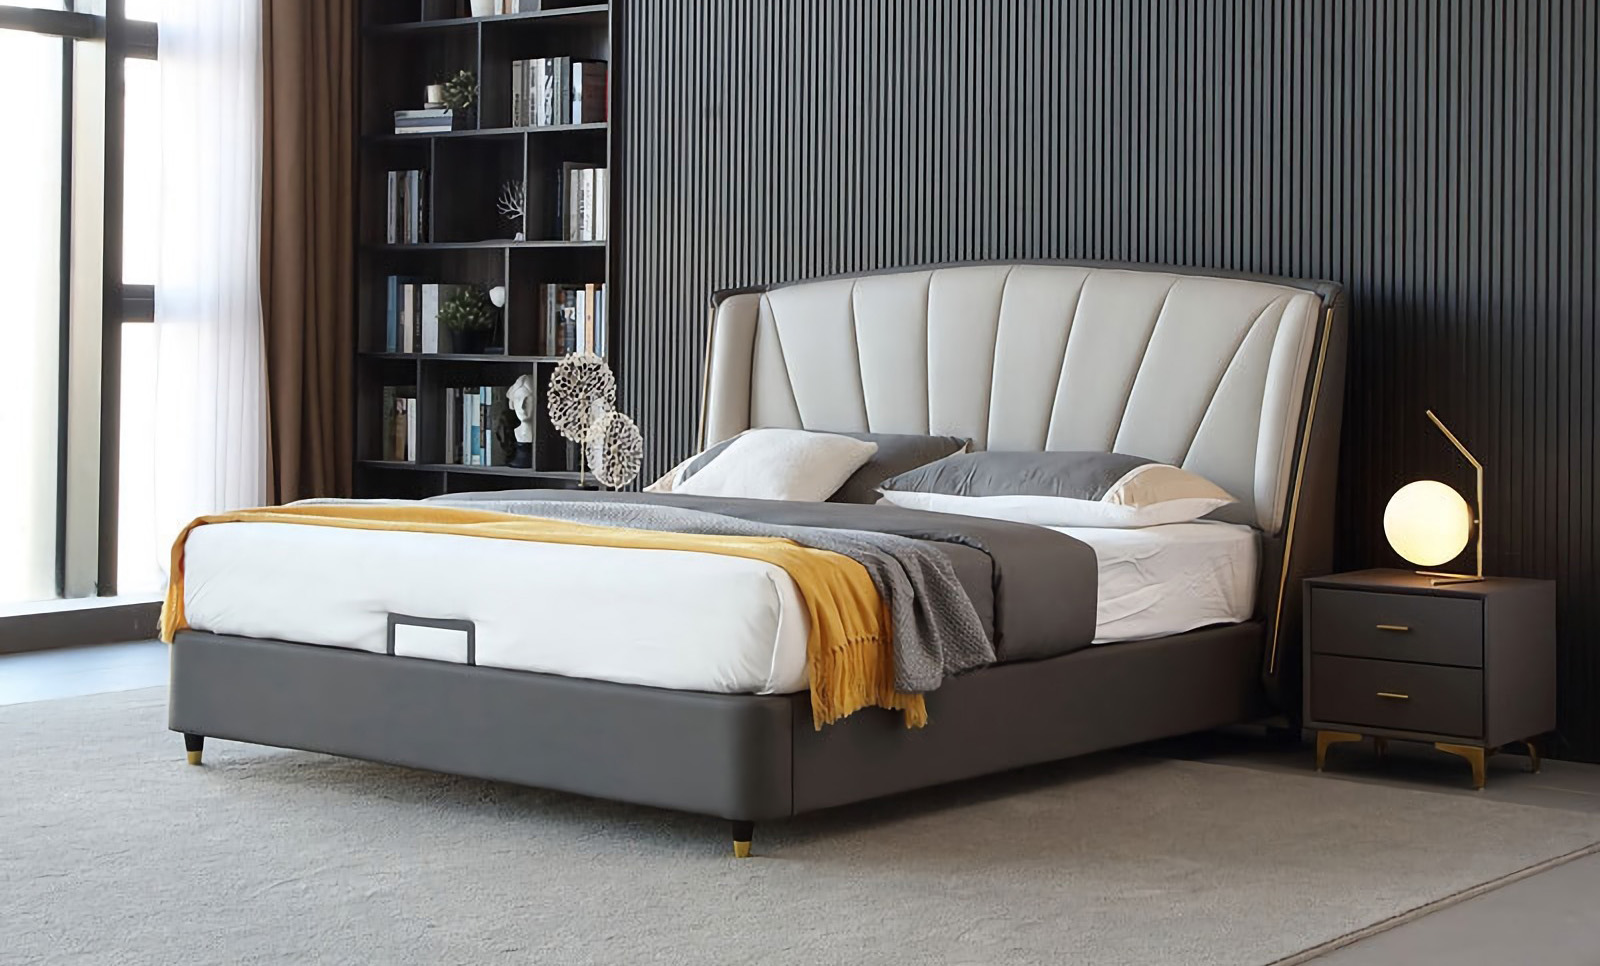 Moderne minimalistische bedontwerpkenmerken van modern minimalistisch bed.